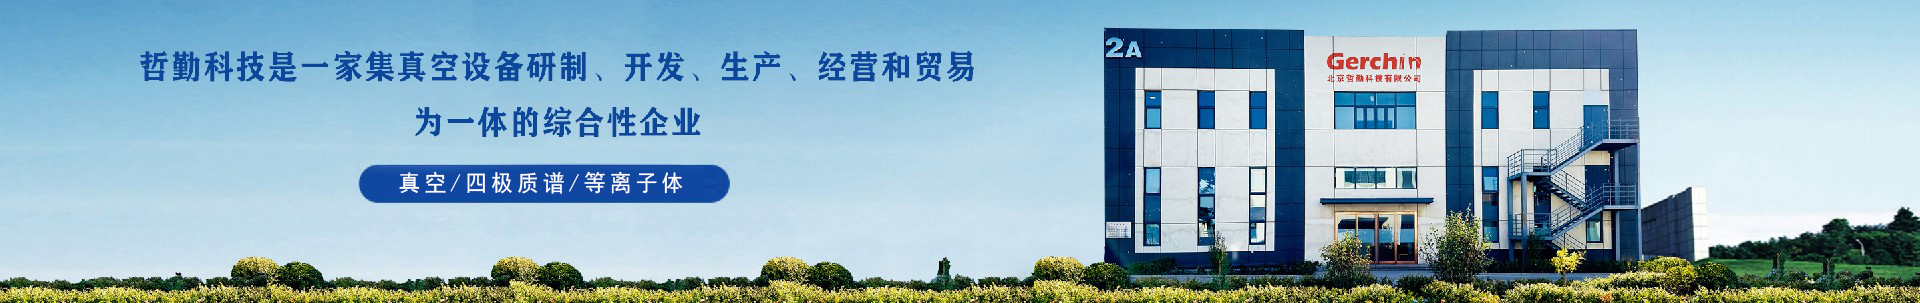 产品中心-北京哲勤科技有限公司